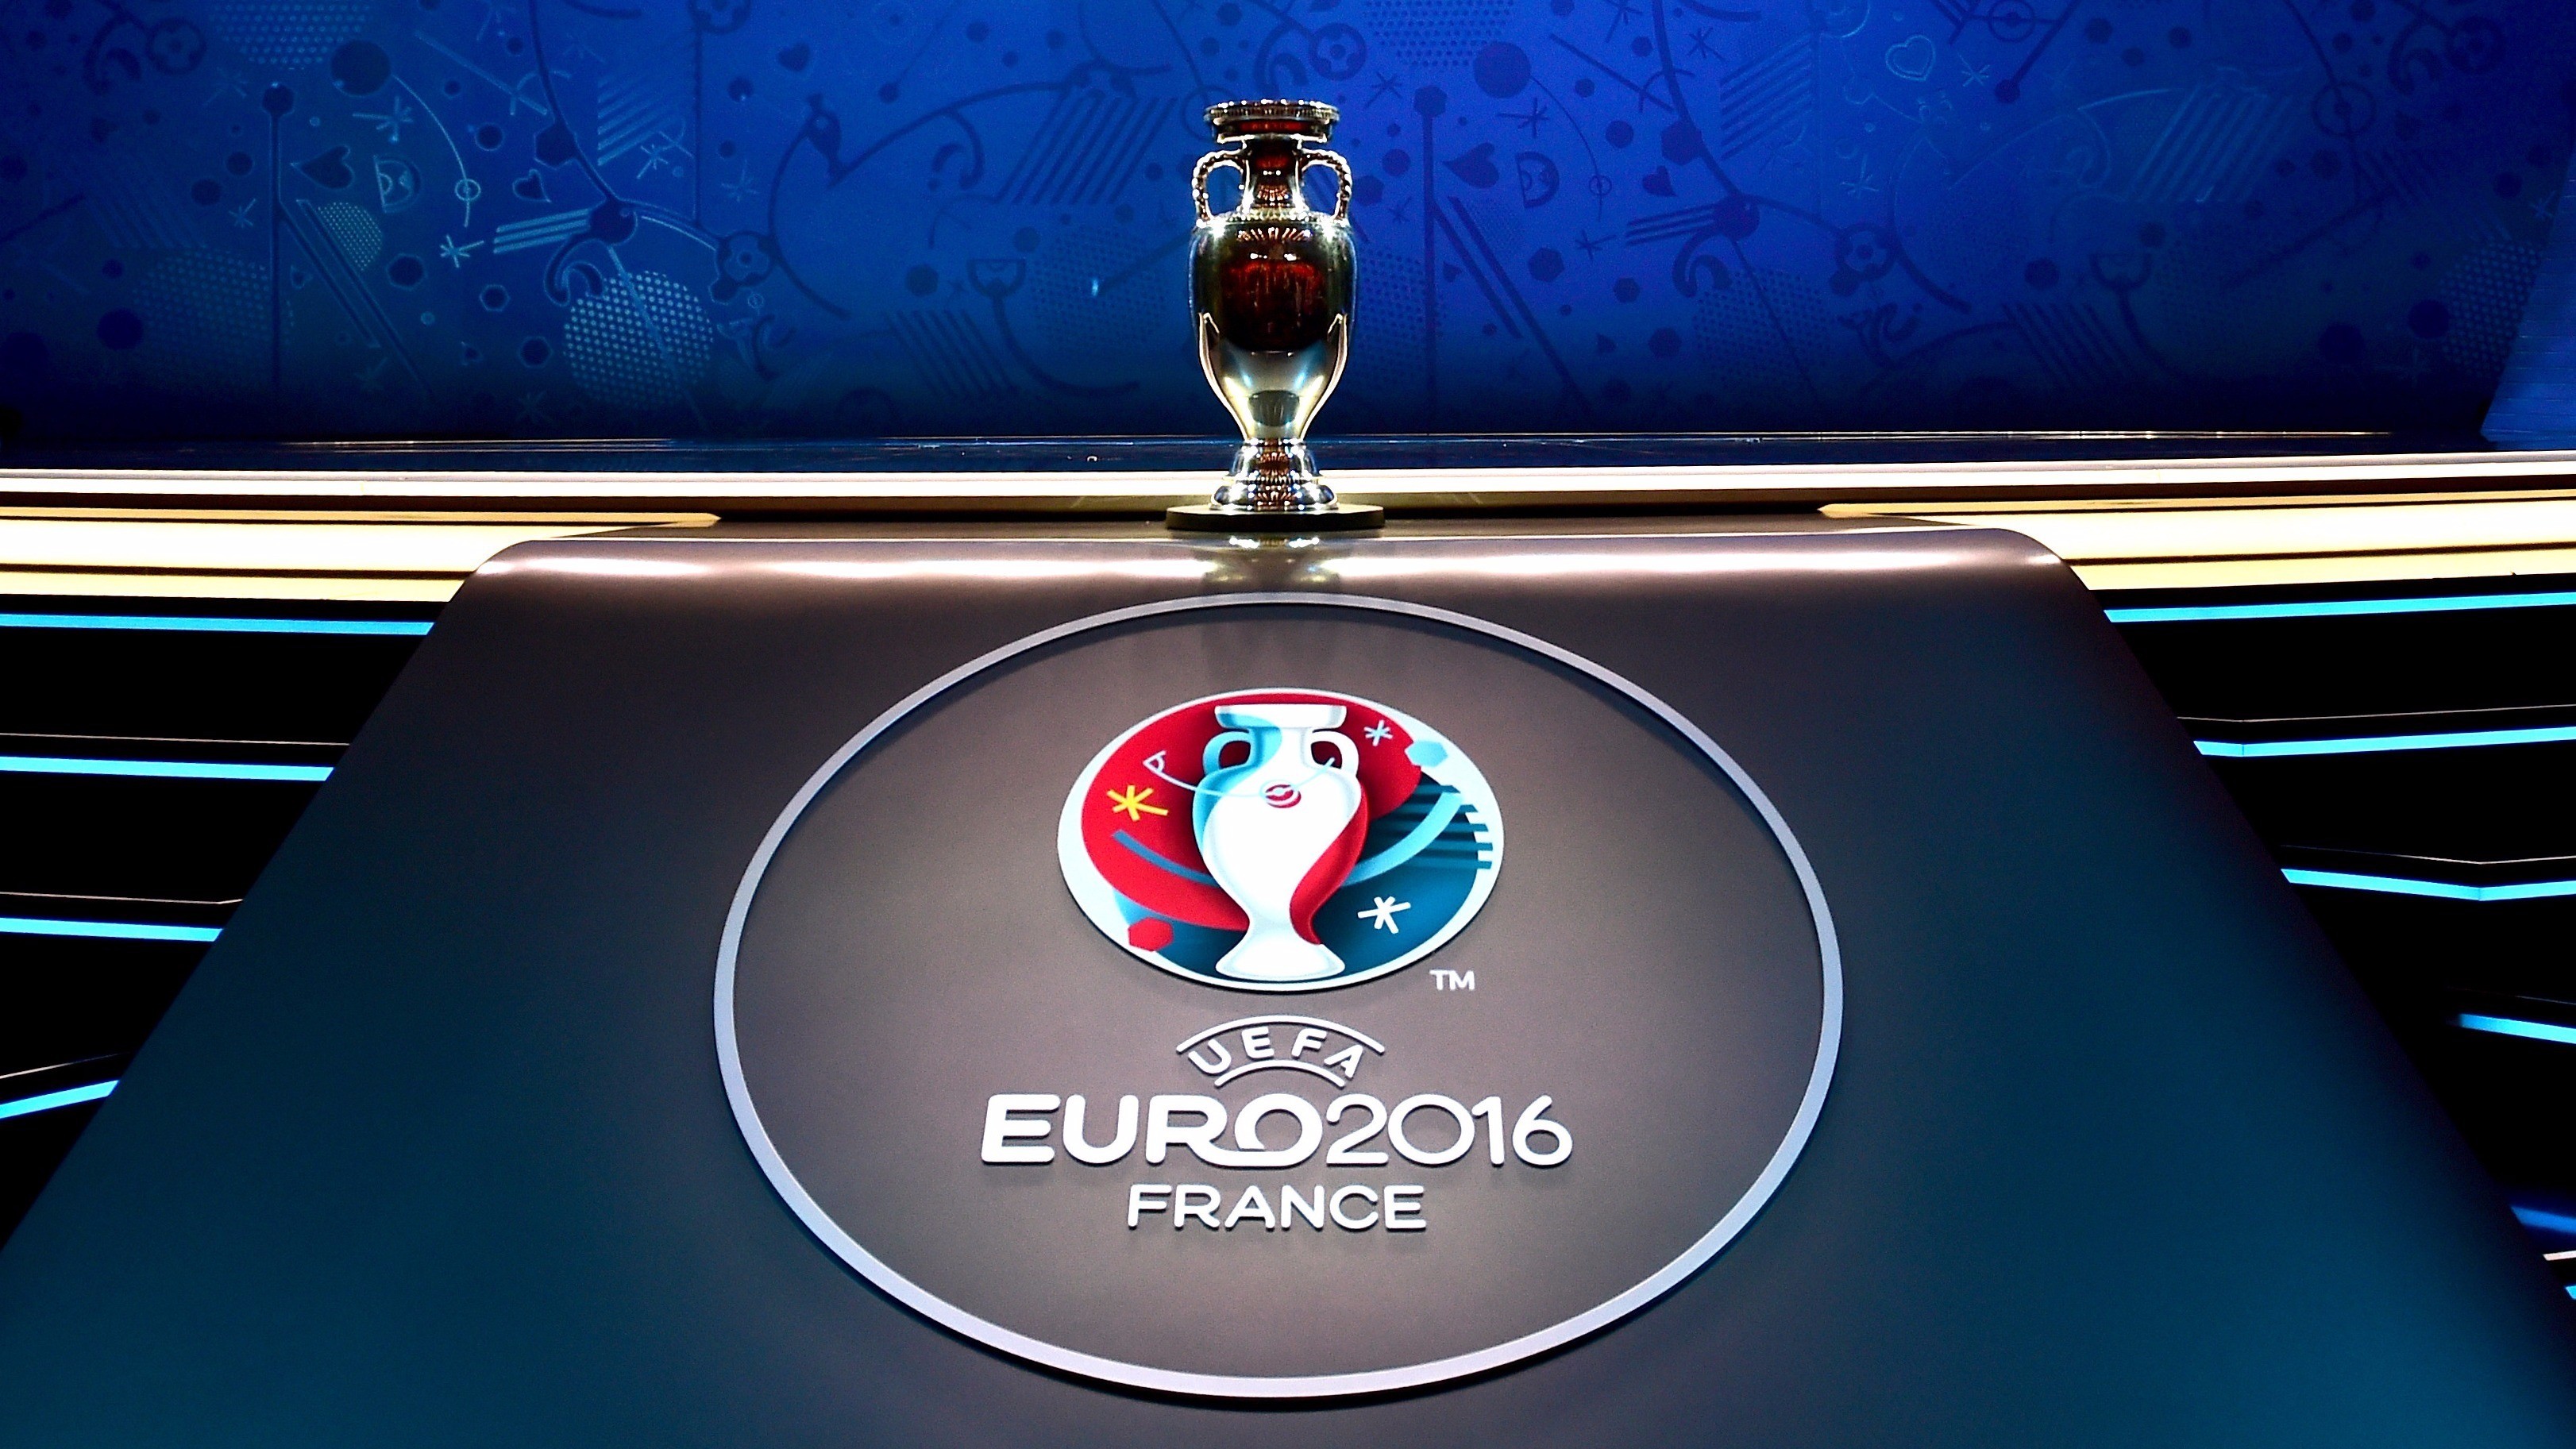 Descargar fondos de escritorio de Eurocopa 2016 HD